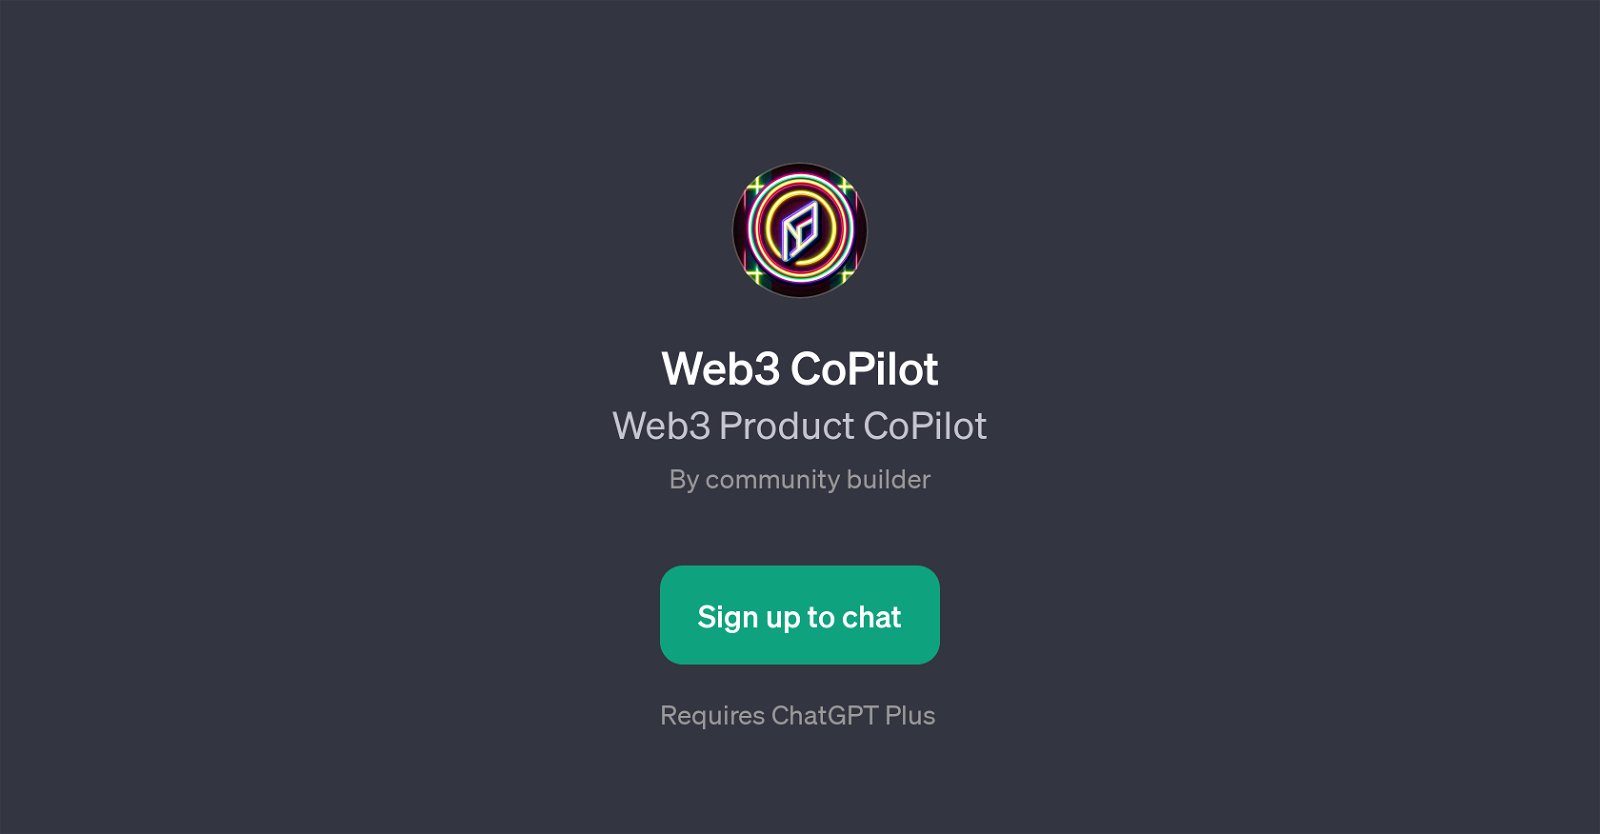 Web3 CoPilot website